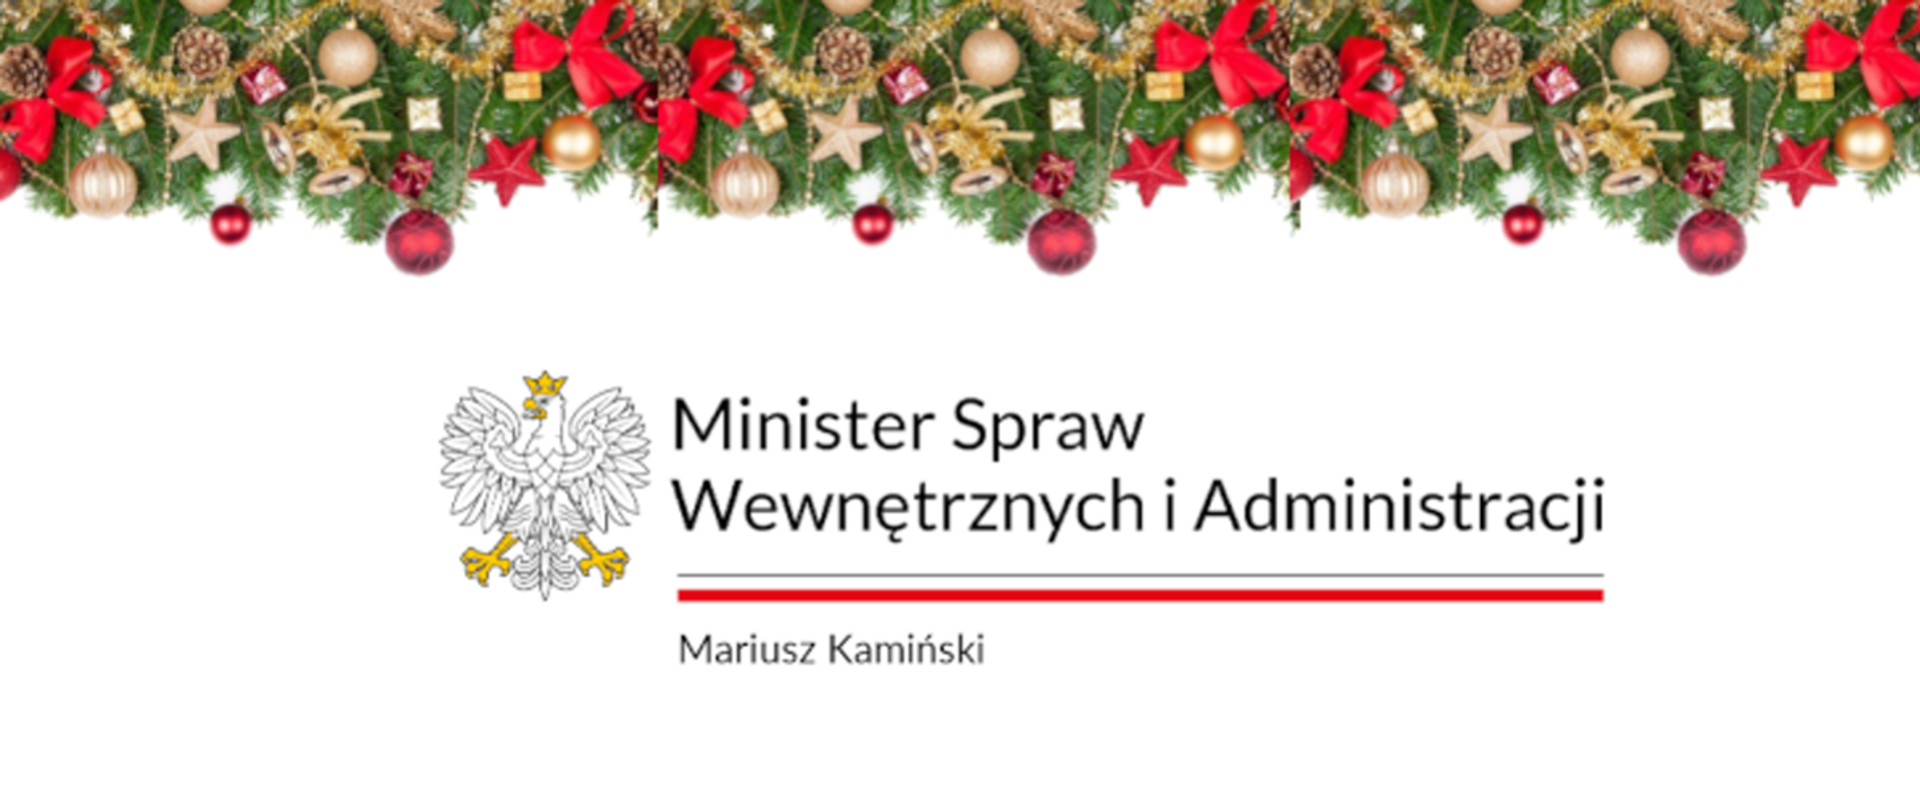 Napis " Minister Spraw Wewnętrznych i Administracji Mariusz Kamiński" na świątecznym tle